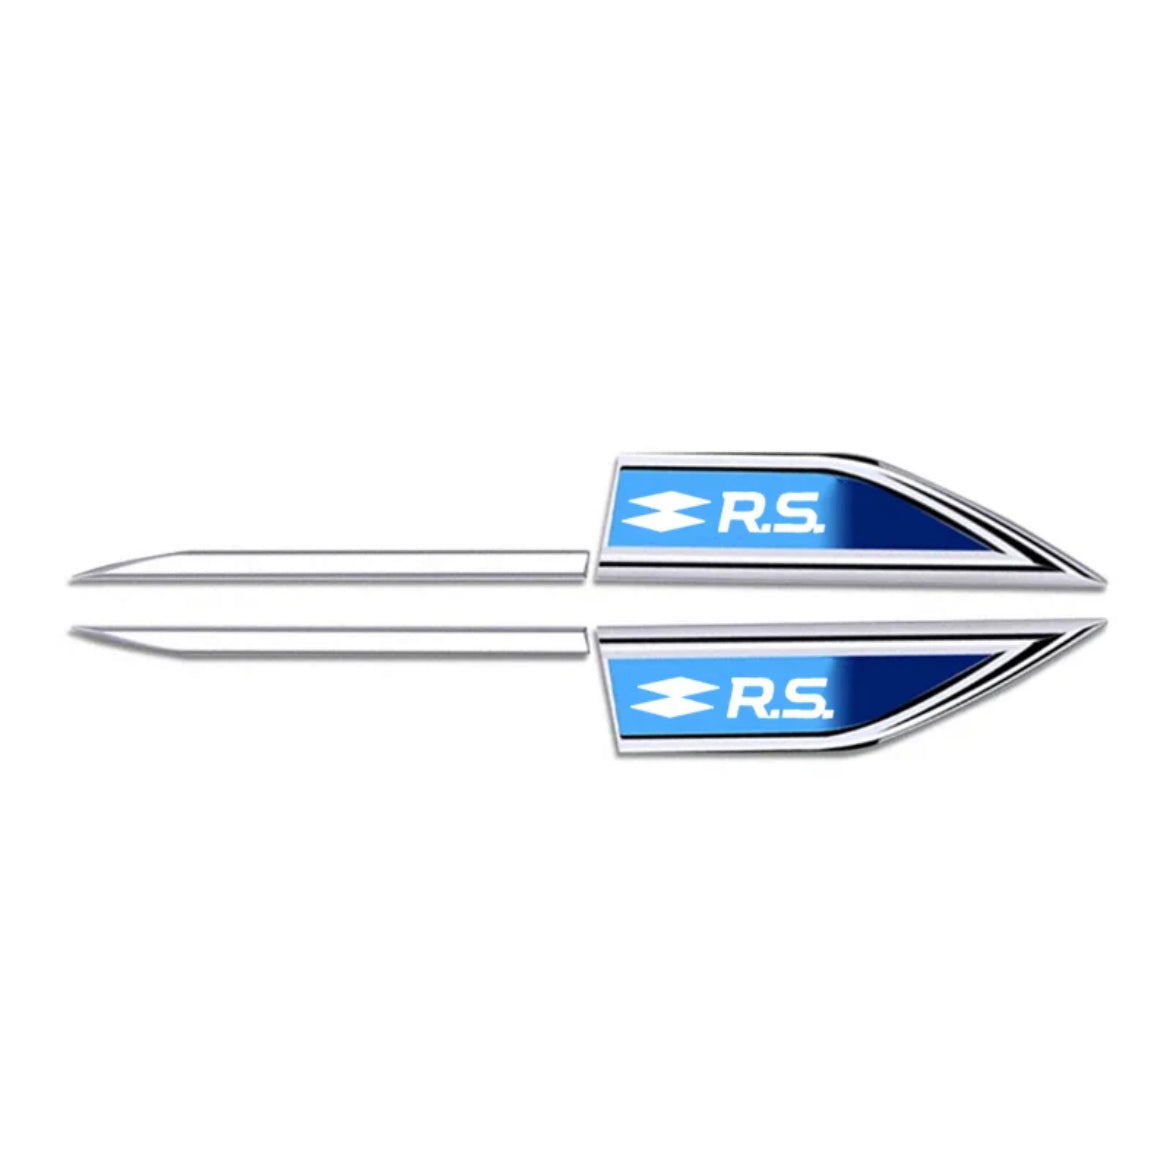 Ailes latérales Renault RS (x2) - Povcars